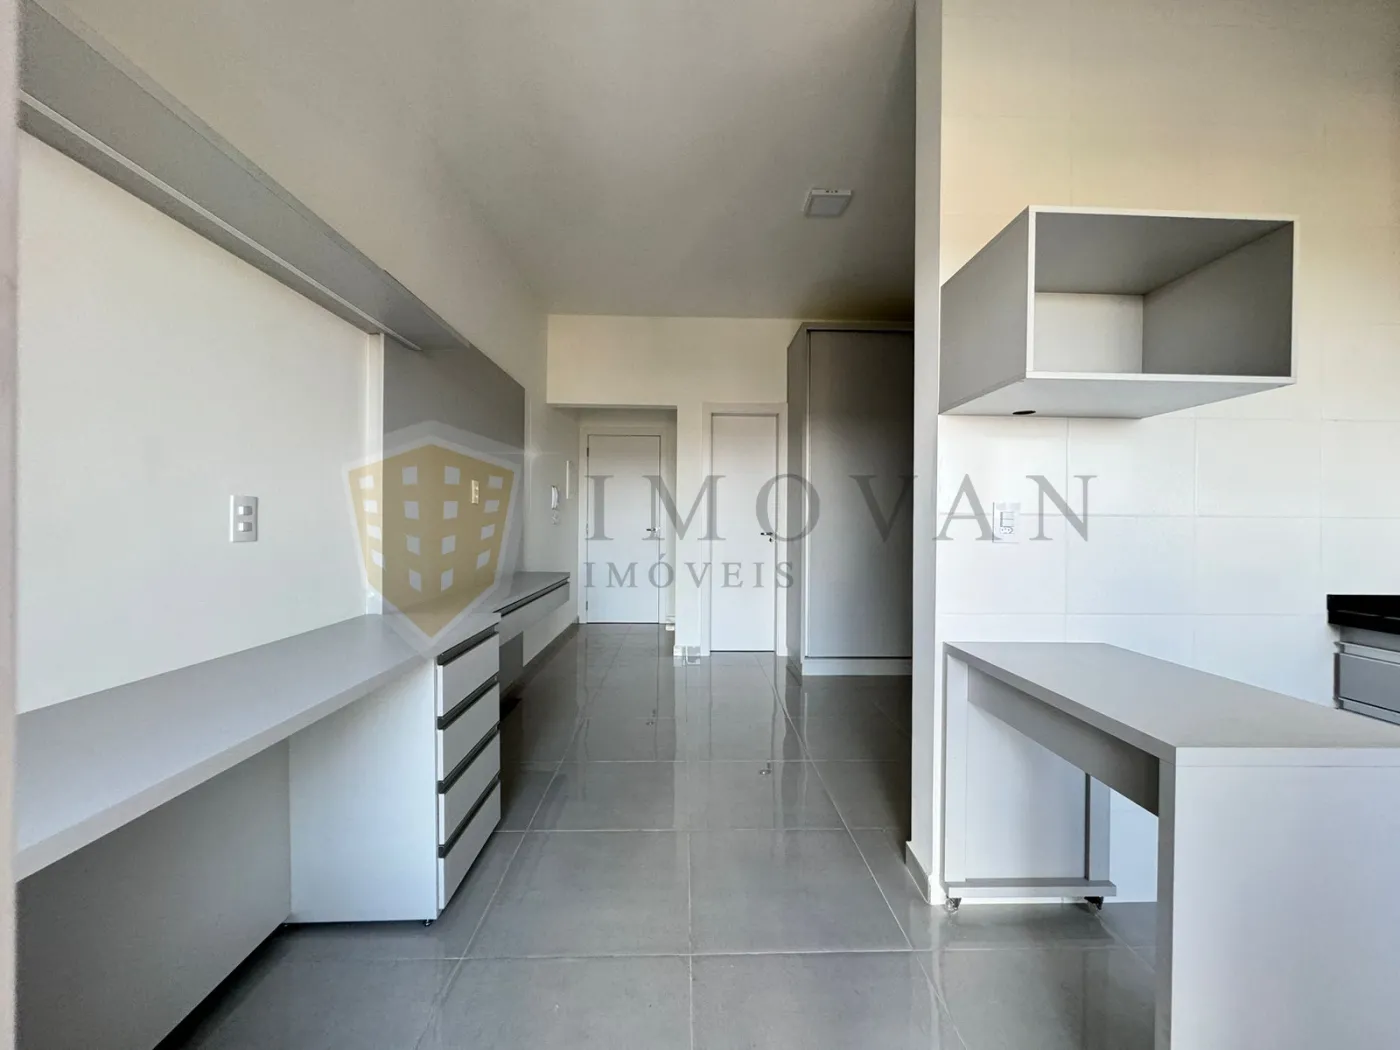 Alugar Apartamento / Kitchnet em Ribeirão Preto R$ 1.650,00 - Foto 13